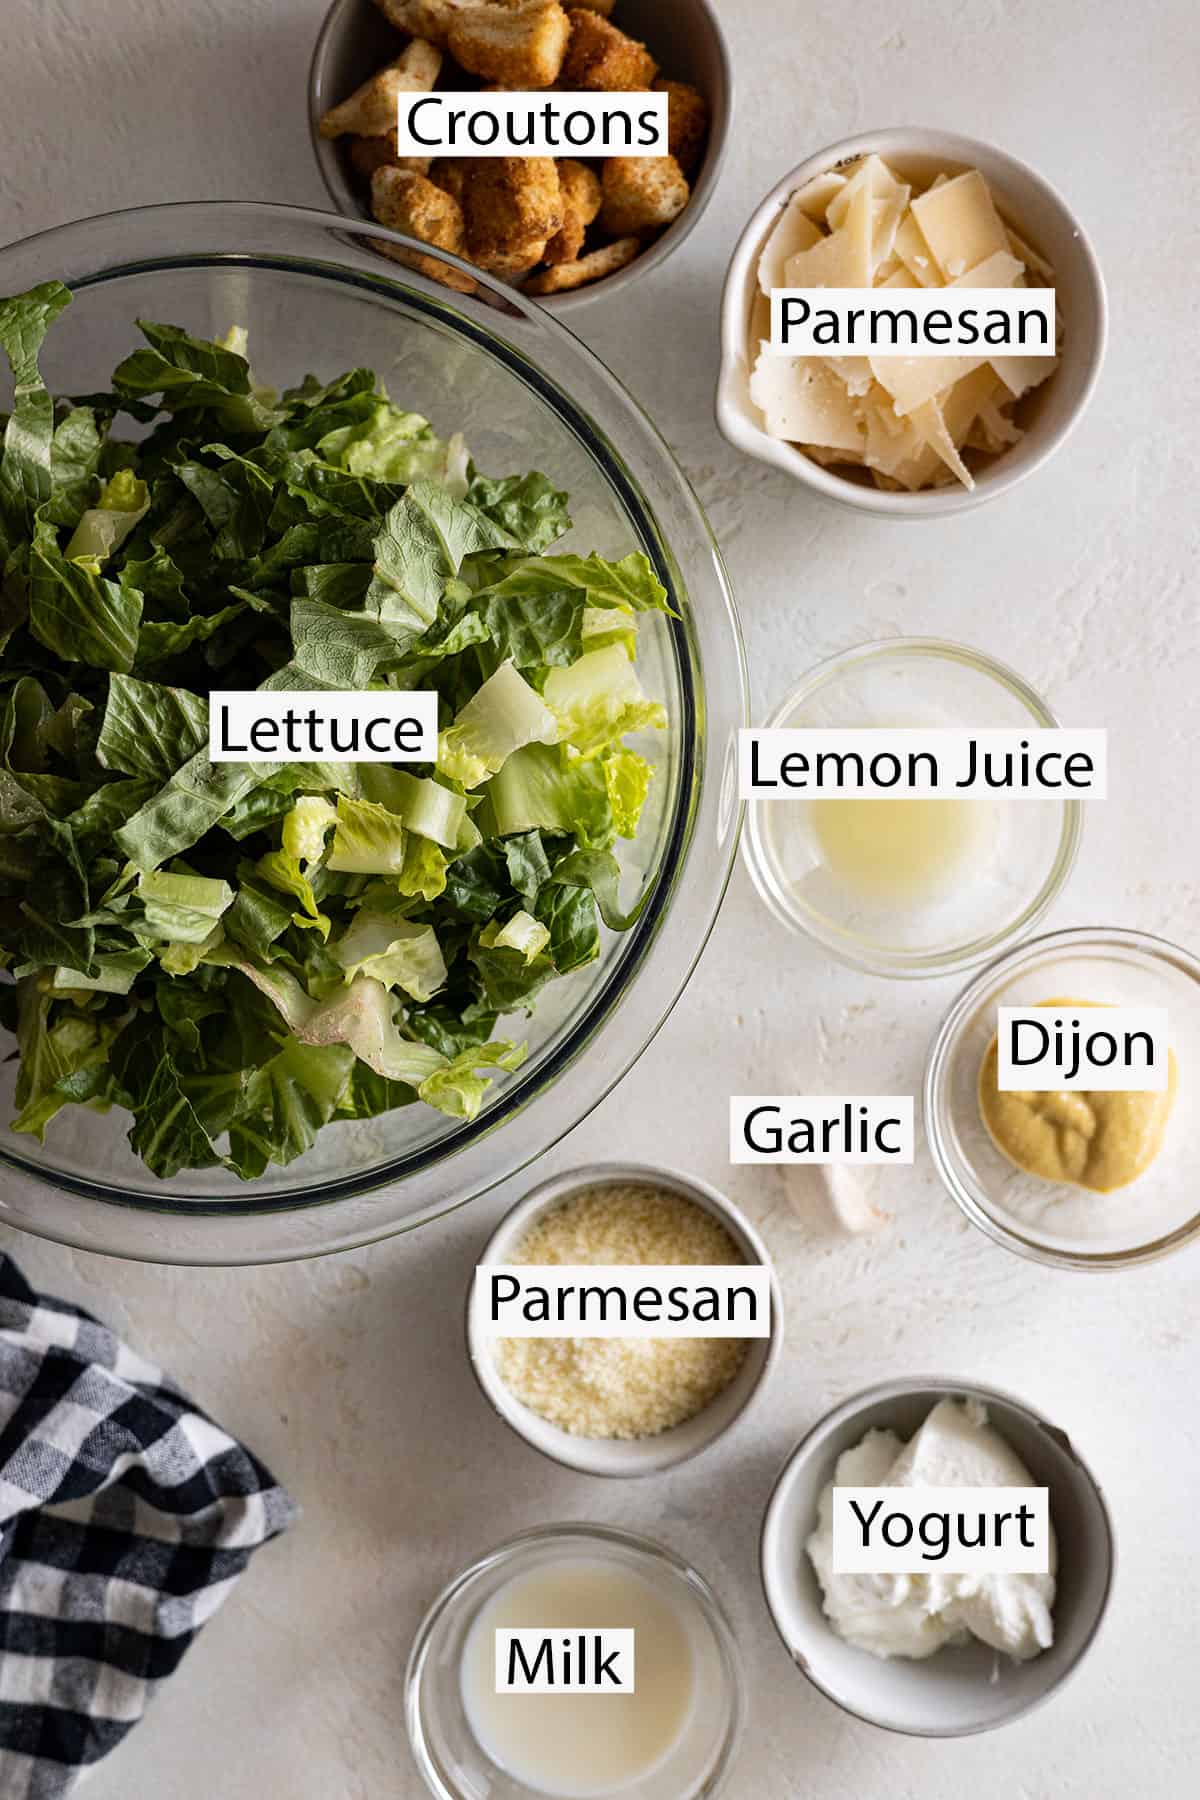 Ingredients: Lettuce, croutons, parmesan, lemon juice, dijon, garlic, yogurt, and milk.